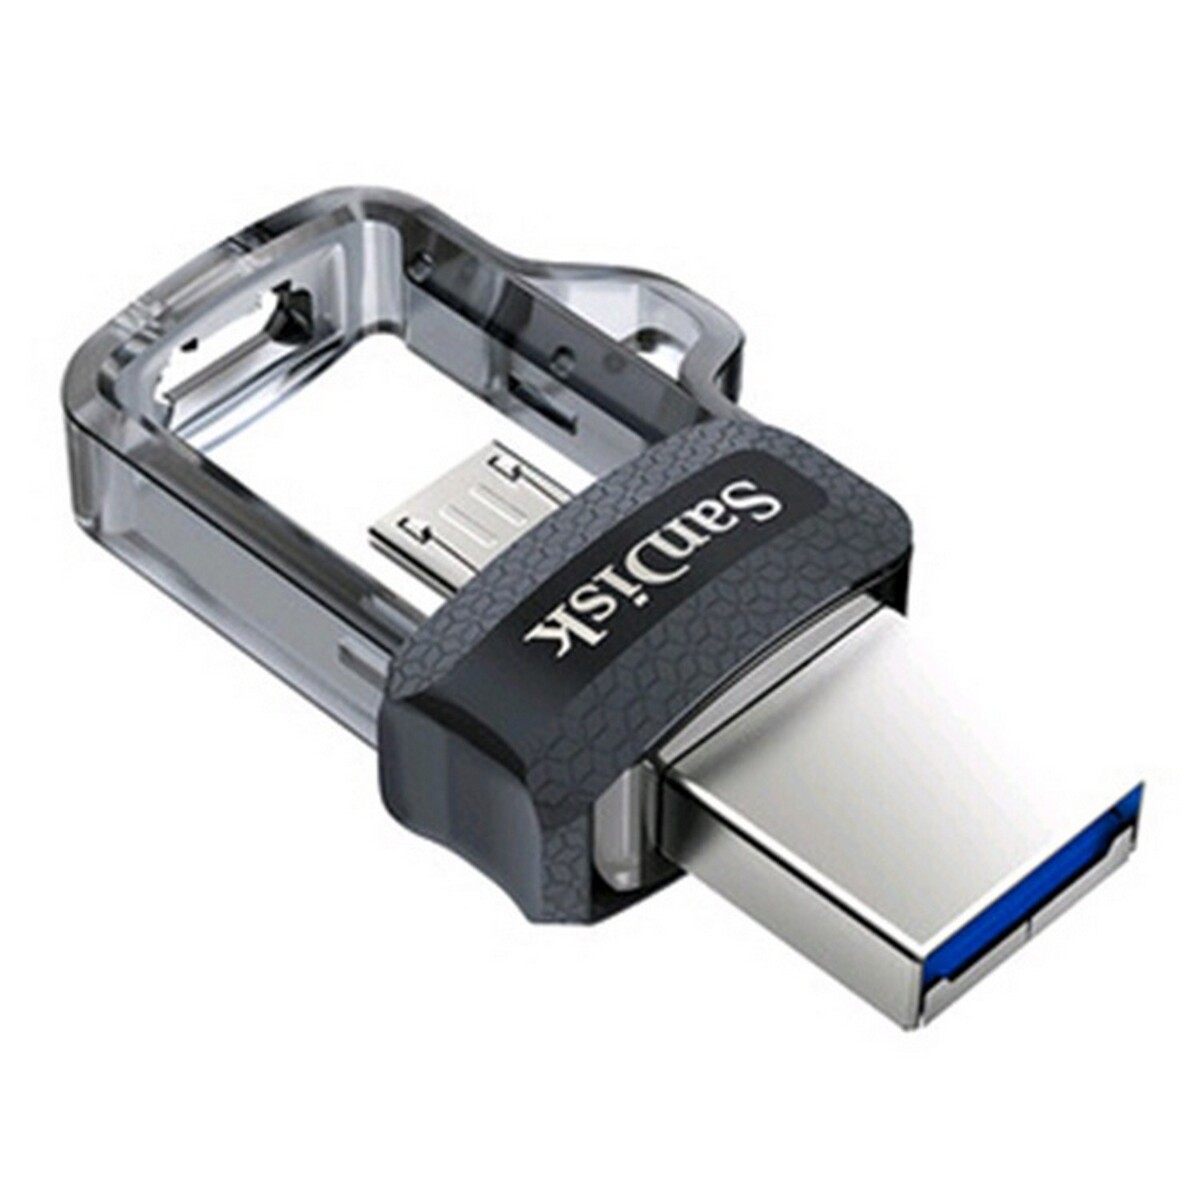 Sandisk Dual USB Flash Drive 128GB/80MBs